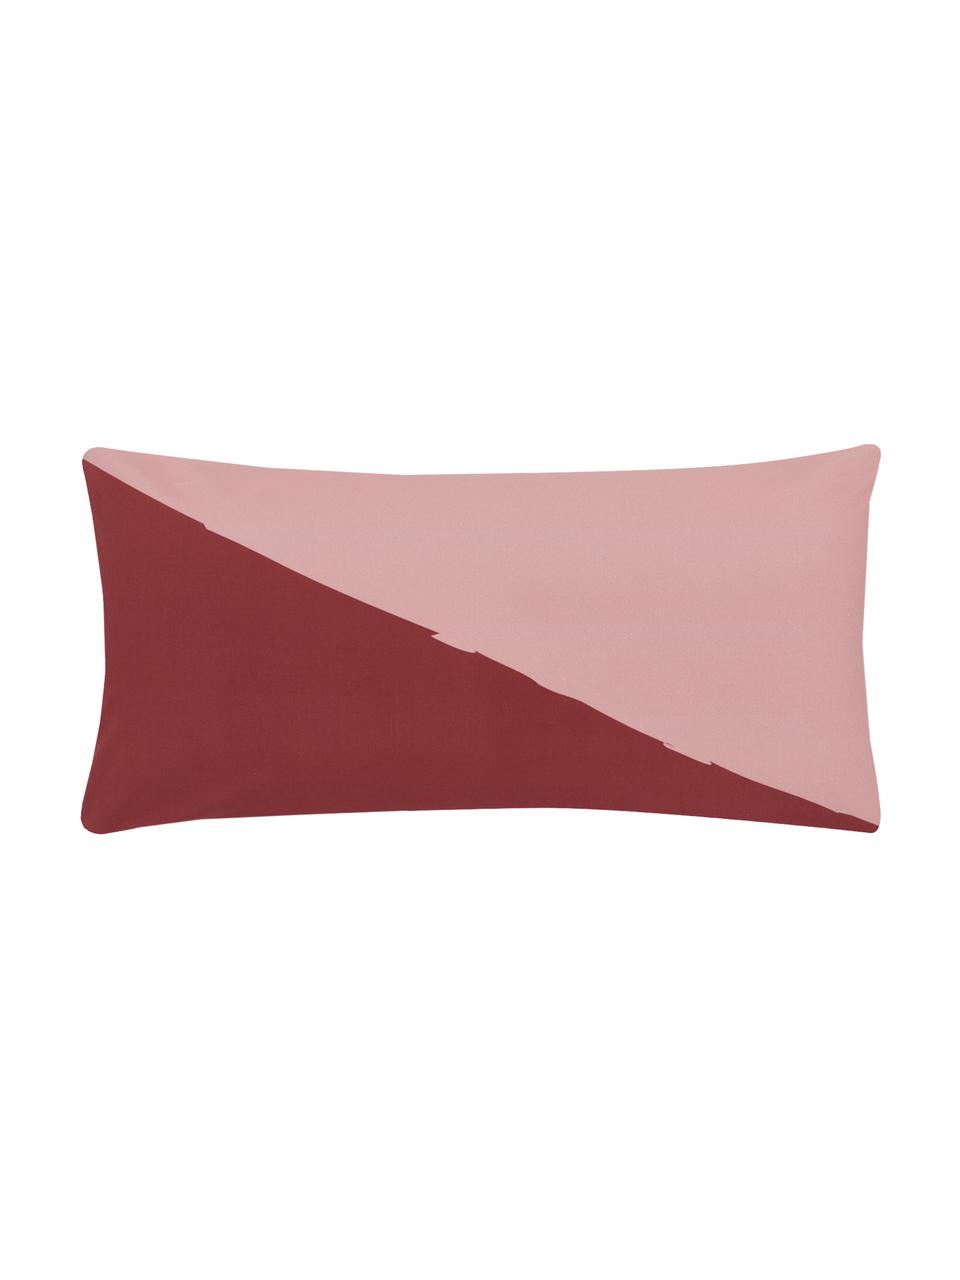 Perkal-Kissenbezüge Colorblock mit geometrischem Muster, 2 Stück, Webart: Perkal, Rot, Rosa, Gelb, Cremeweiß, 40 x 80 cm